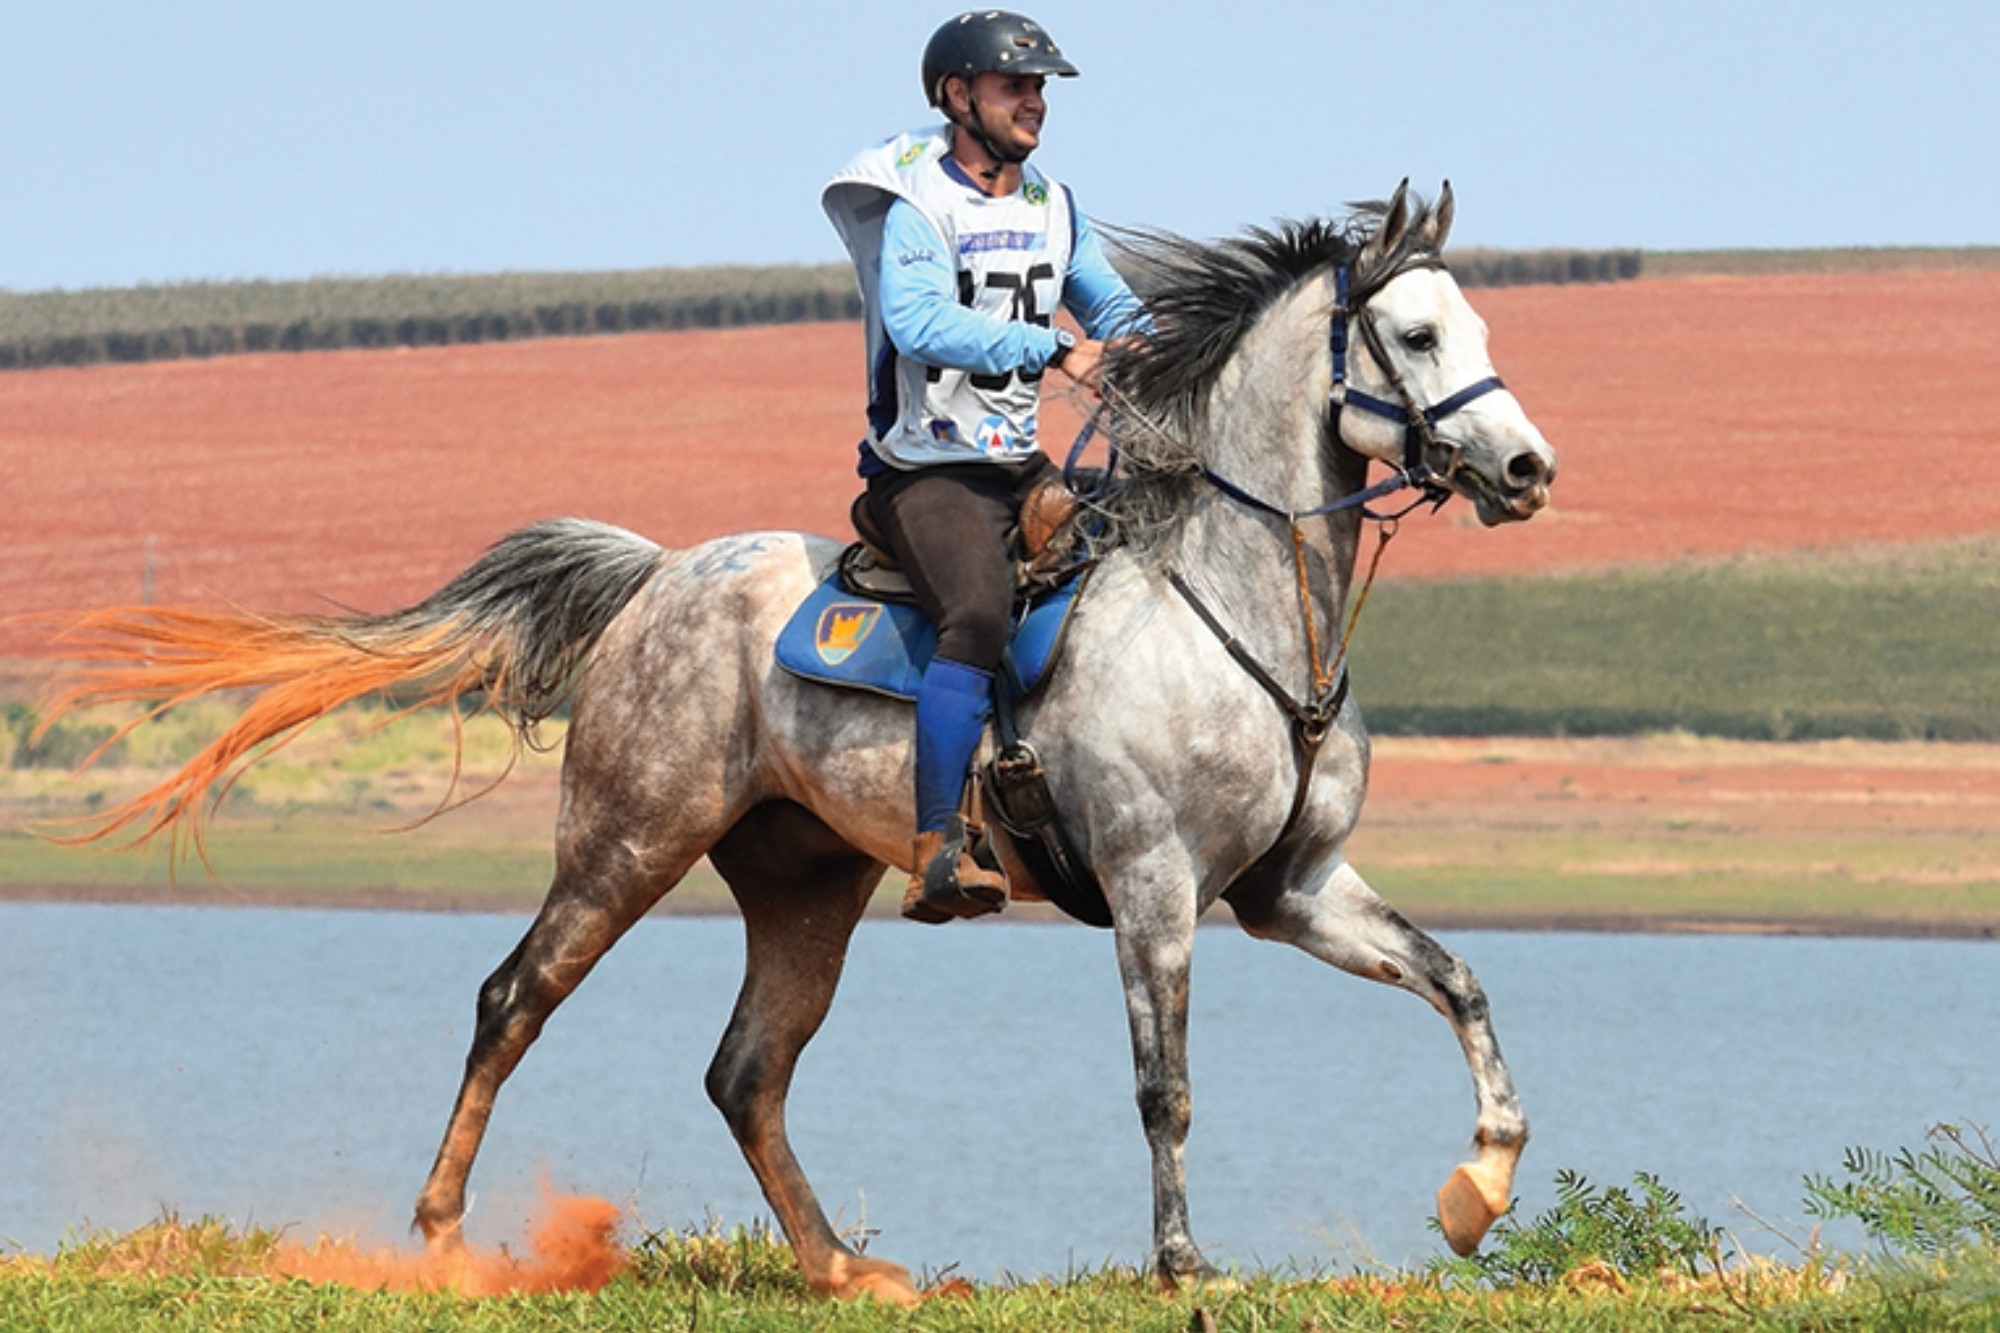 https://forbes.com.br/wp-content/uploads/2021/05/agro-equinos-arabe-190521-RicardoSaliba_Divulgacao.jpg